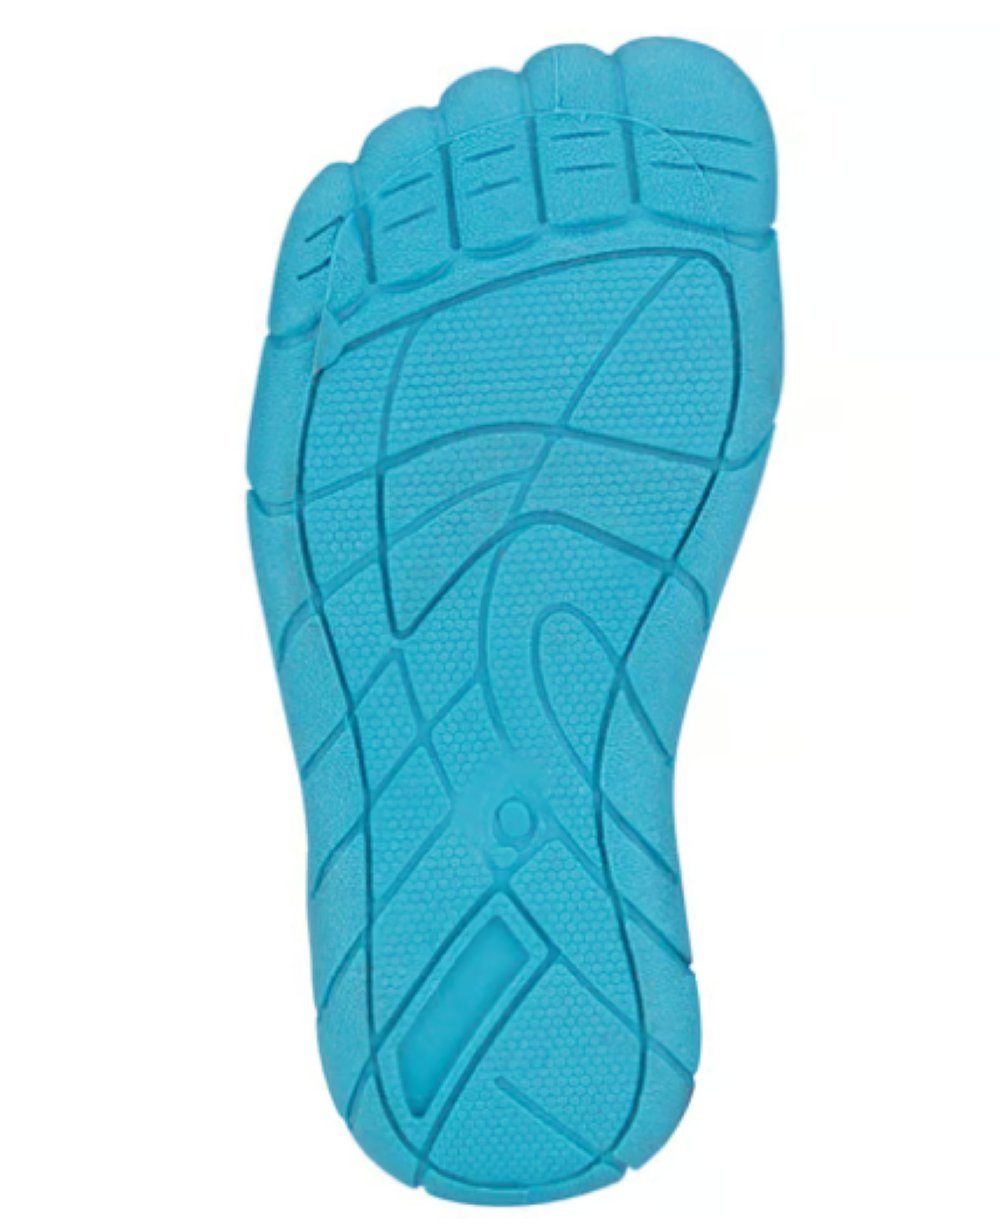 Neopren in anthrazit/blau Mädchen Größe AQUASCHUHE Fußform Wasserschuh / Jungen Waimea 28-30